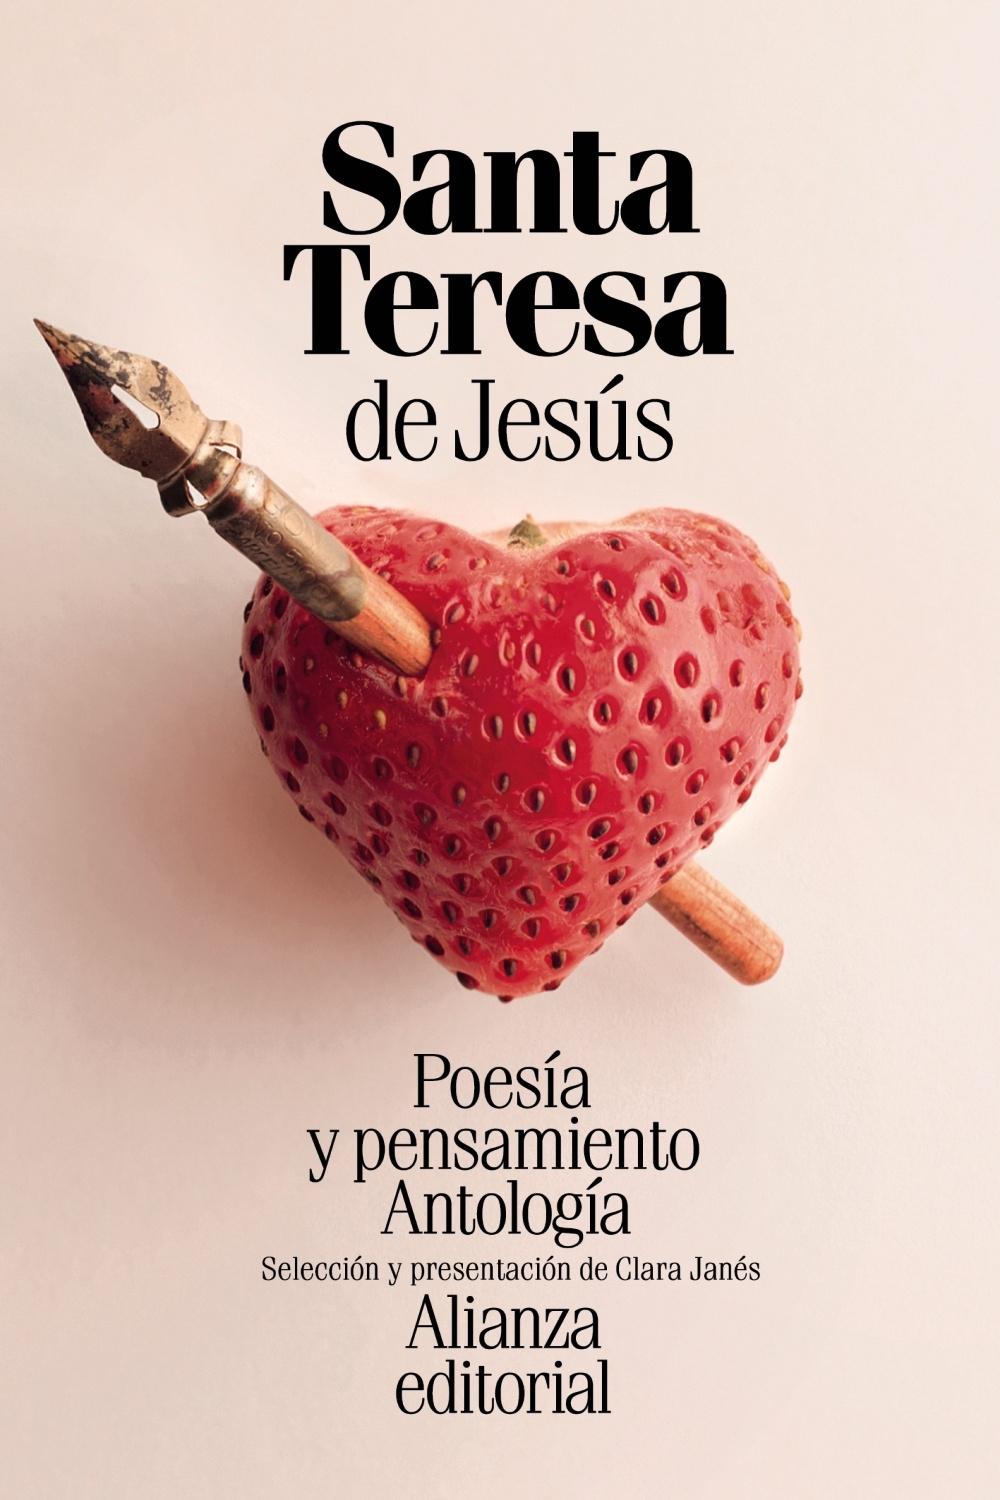 POESÍA Y PENSAMIENTO DE SANTA TERESA DE JESÚS "ANTOLOGÍA"